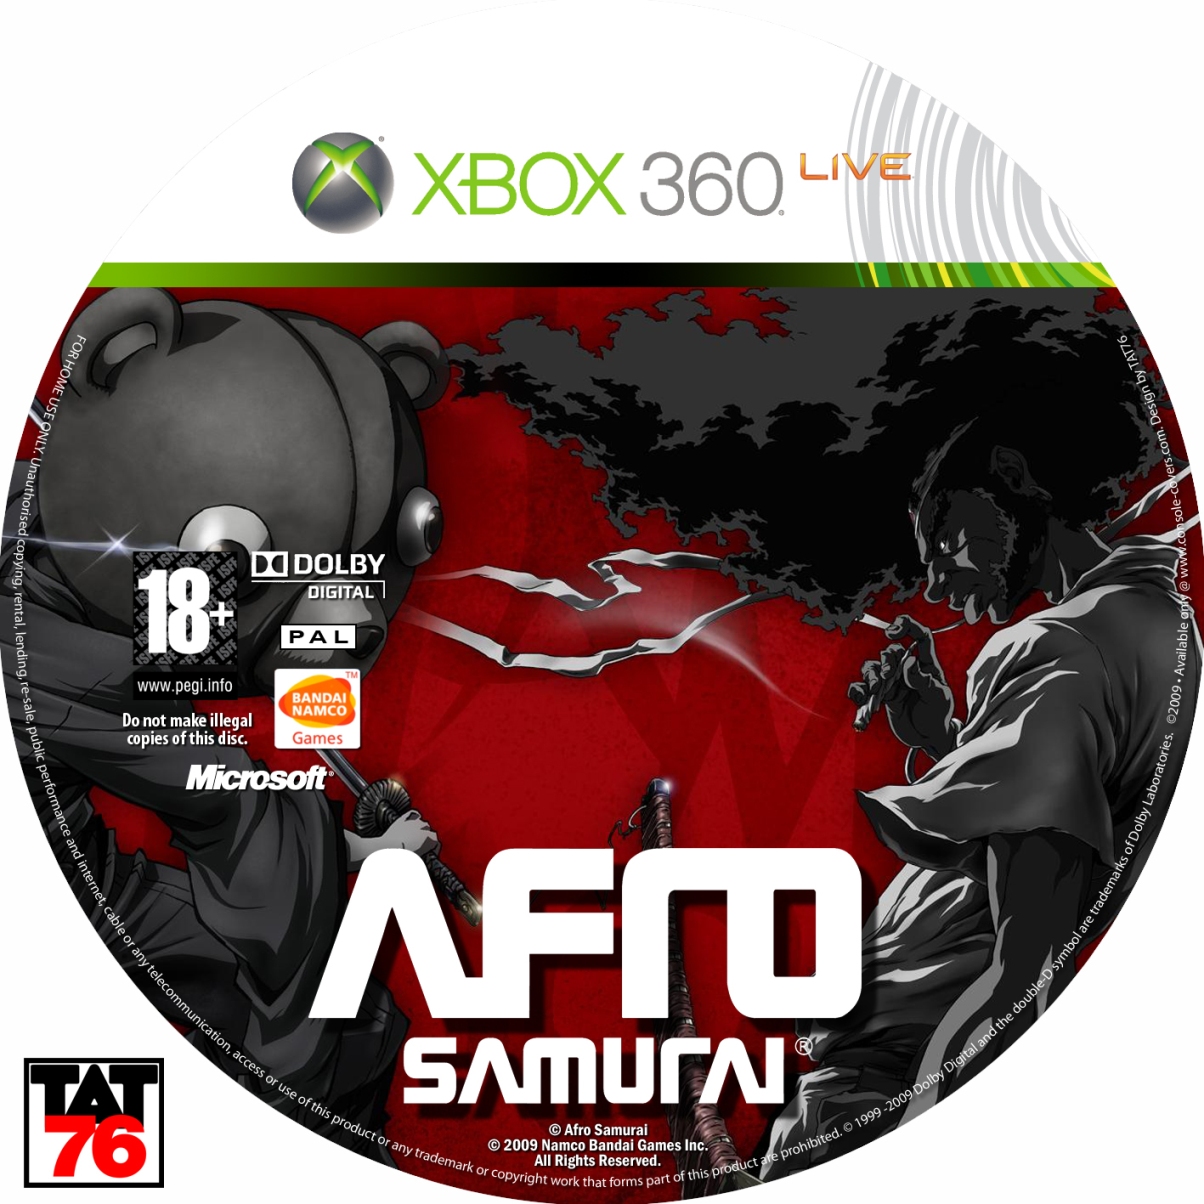 Игры за 5 рублей. Диск для игры 19 см. Afro Samurai (Video game). Afro Samurai Video game Soundtrack.